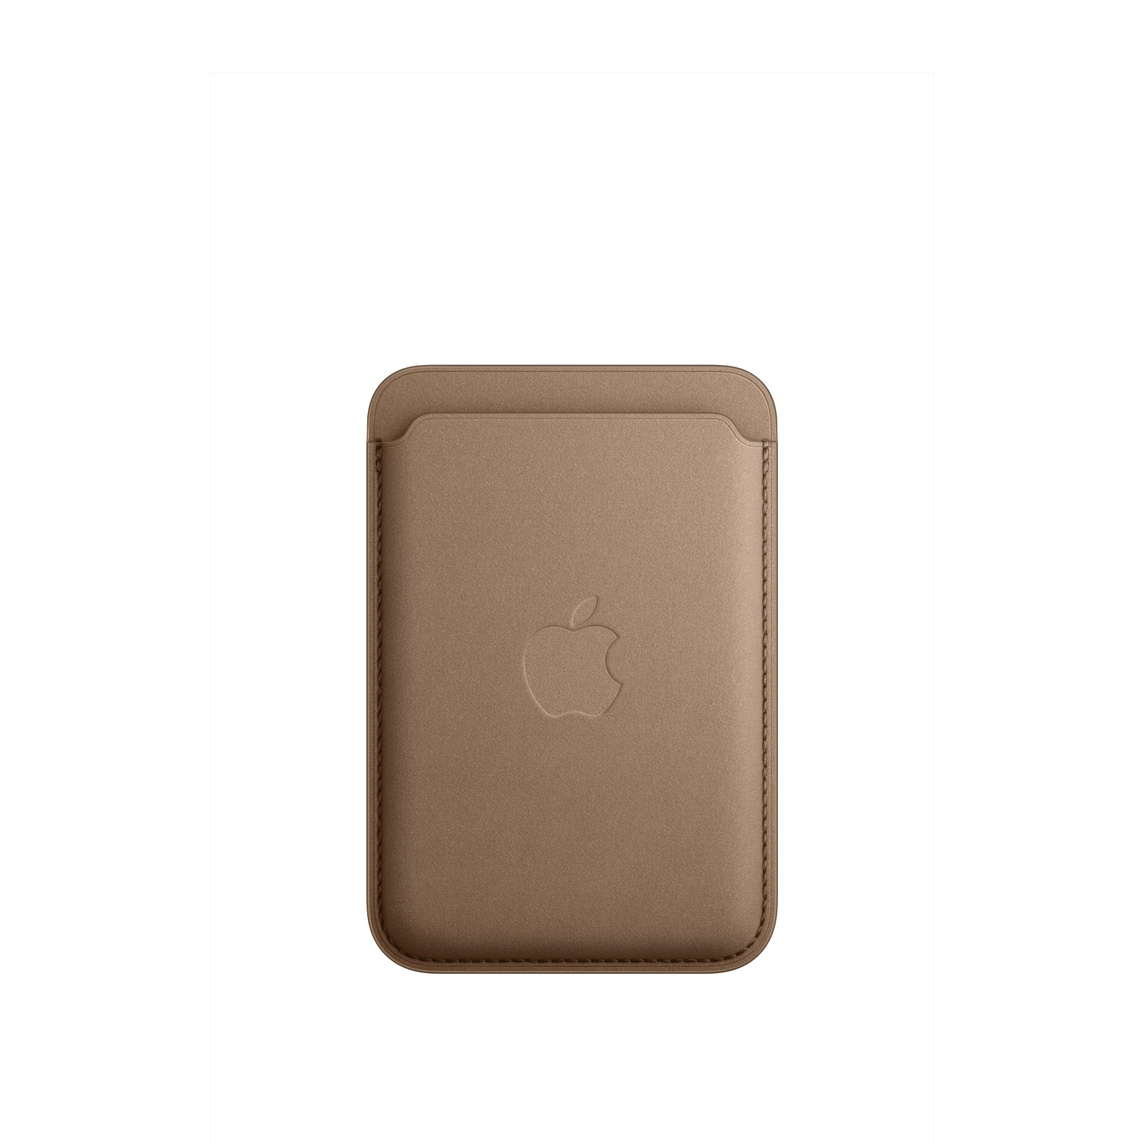 トープのMagSafe対応iPhoneファインウーブンウォレットの前面。上部にカードスロットがあり、中央にAppleのロゴが入っている。